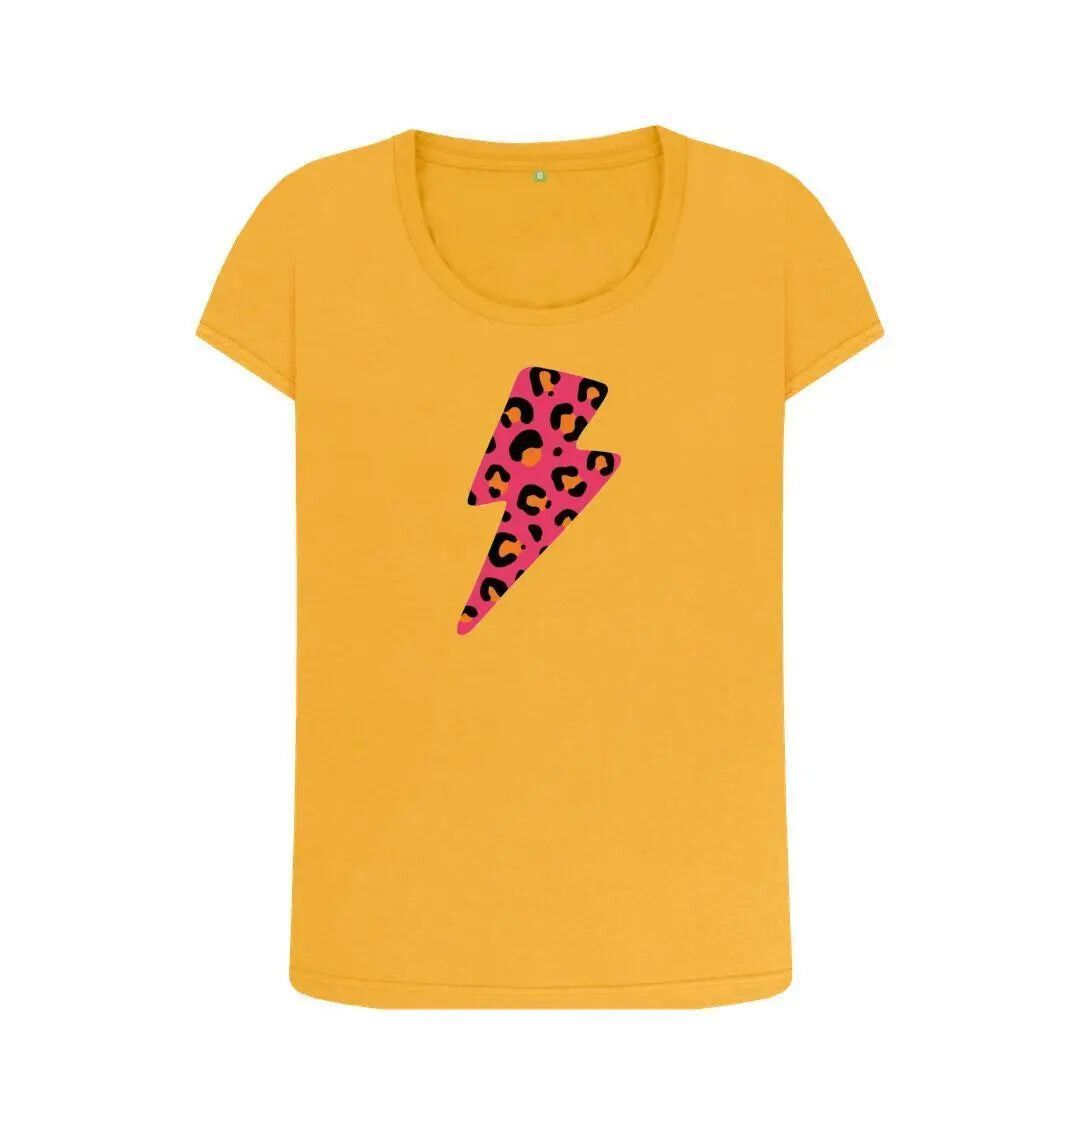 Pink and orange leopard print lightning bolt scoop neck Trend Tonic